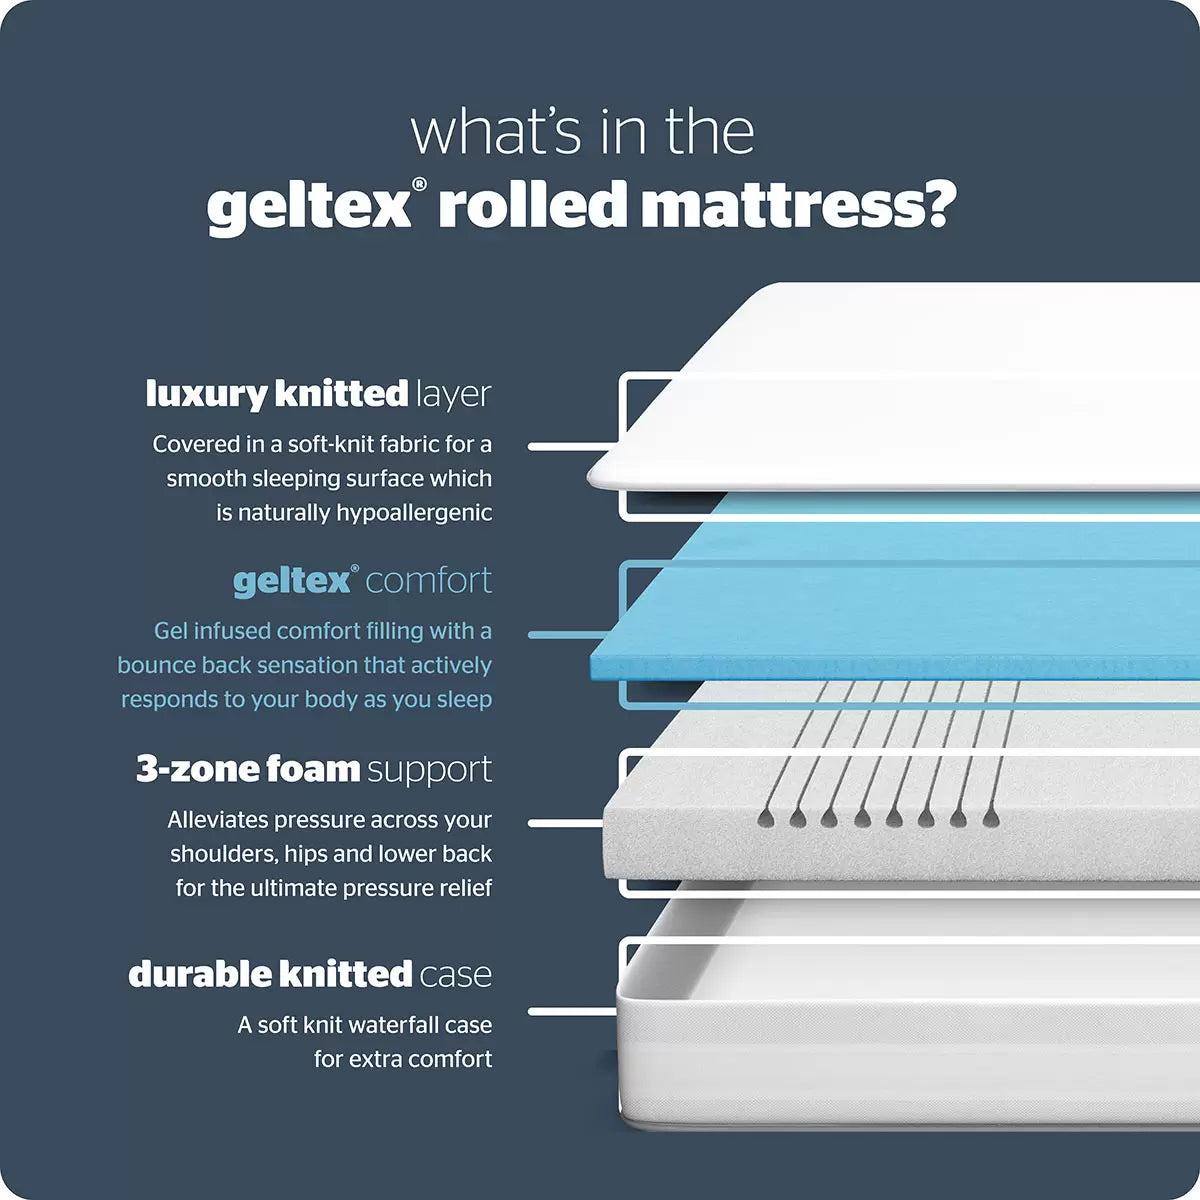 geltex rolled mattress